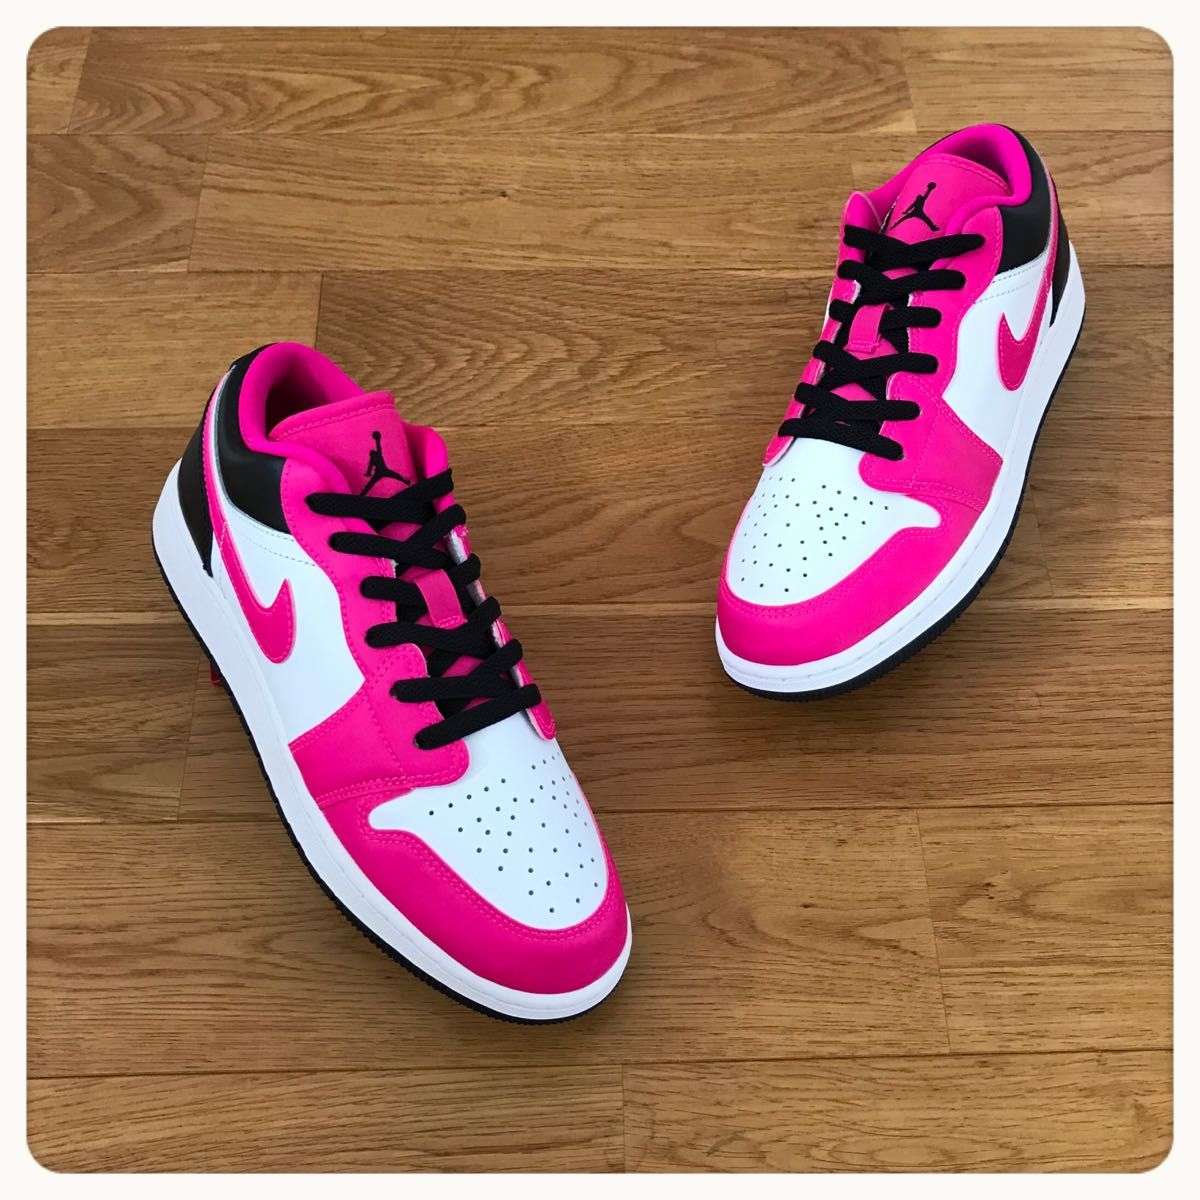 24 5cm Nike Air Jordan 1 Low Fierce Pink エアジョーダン 1 フィアス